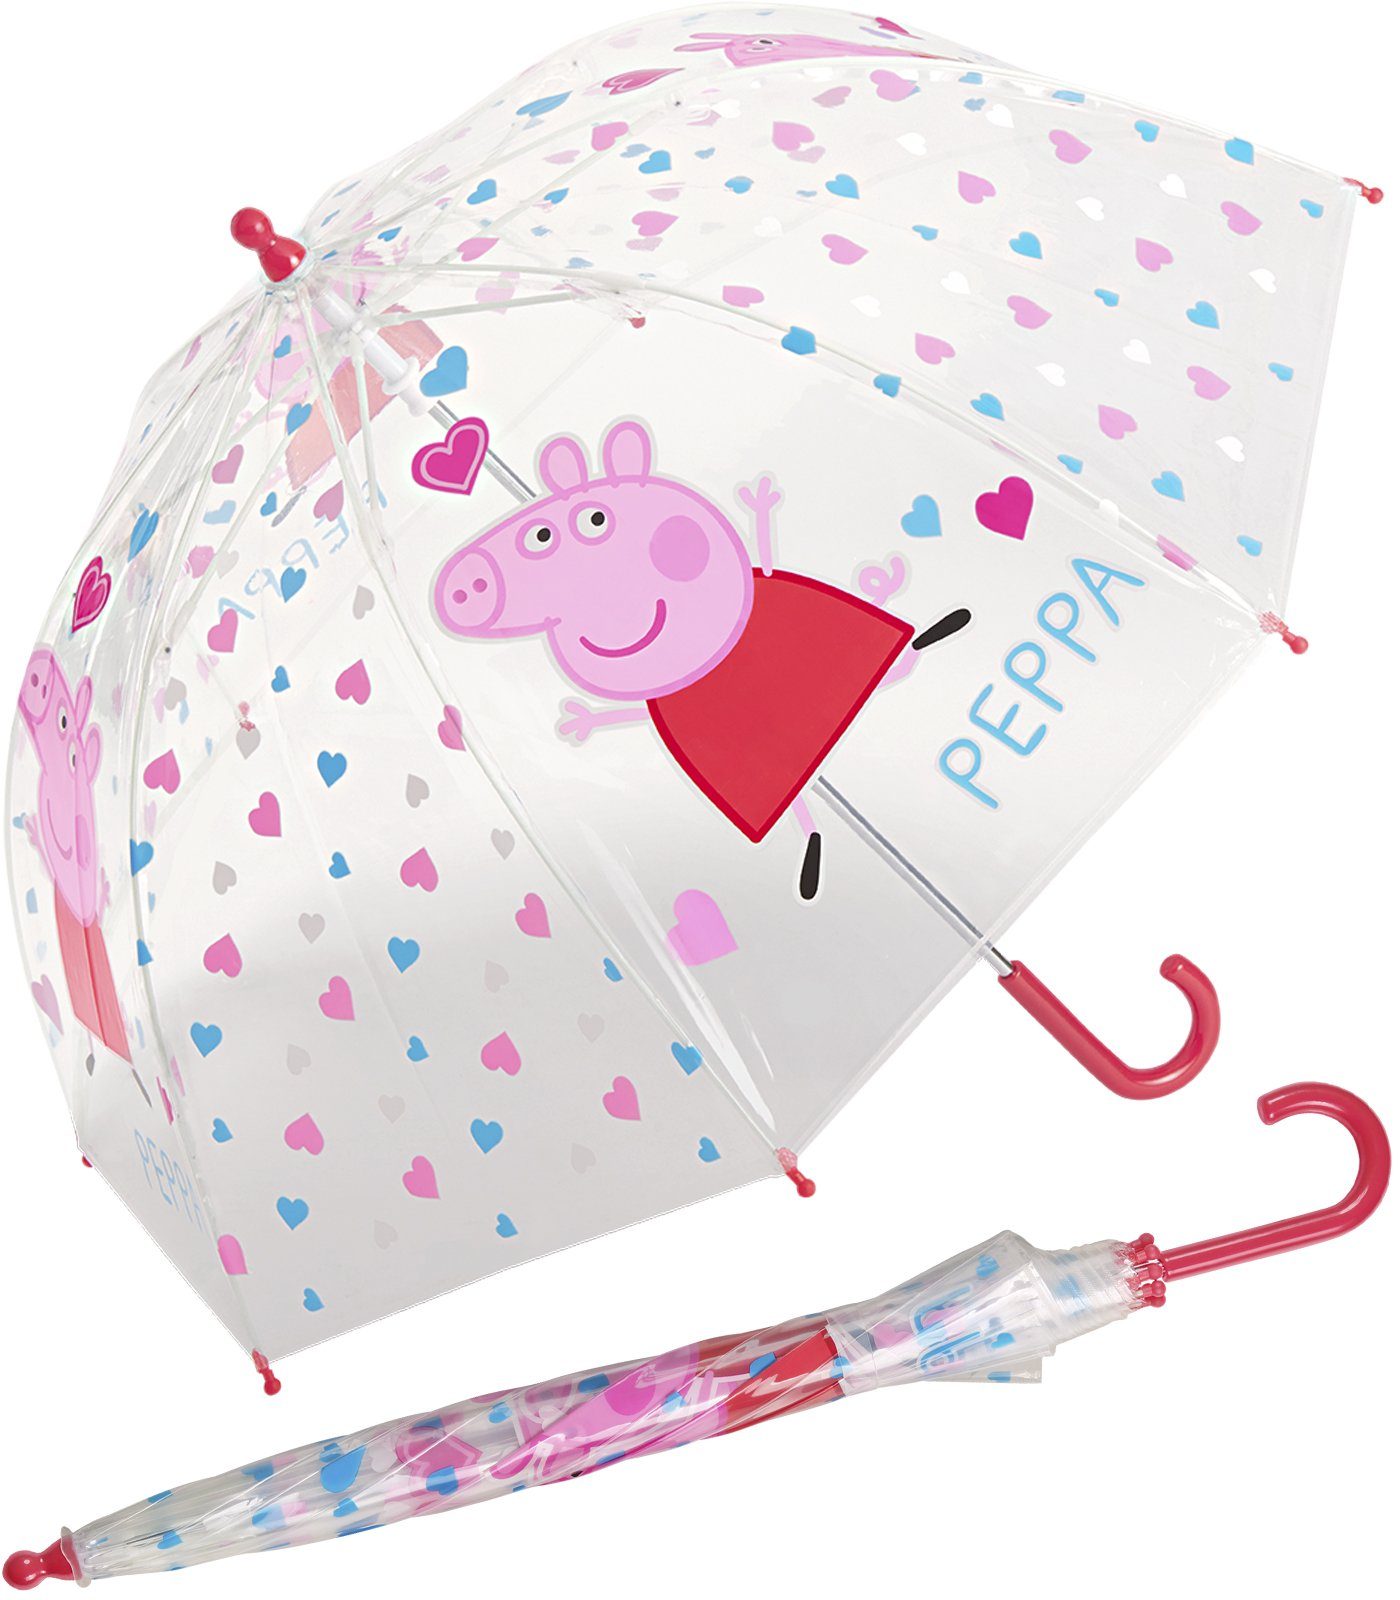 HAPPY RAIN Stockregenschirm Kinder-Stockschirm transparent durchsichtig, stabil, leicht, mit Peppa Pig Motiven Herzen